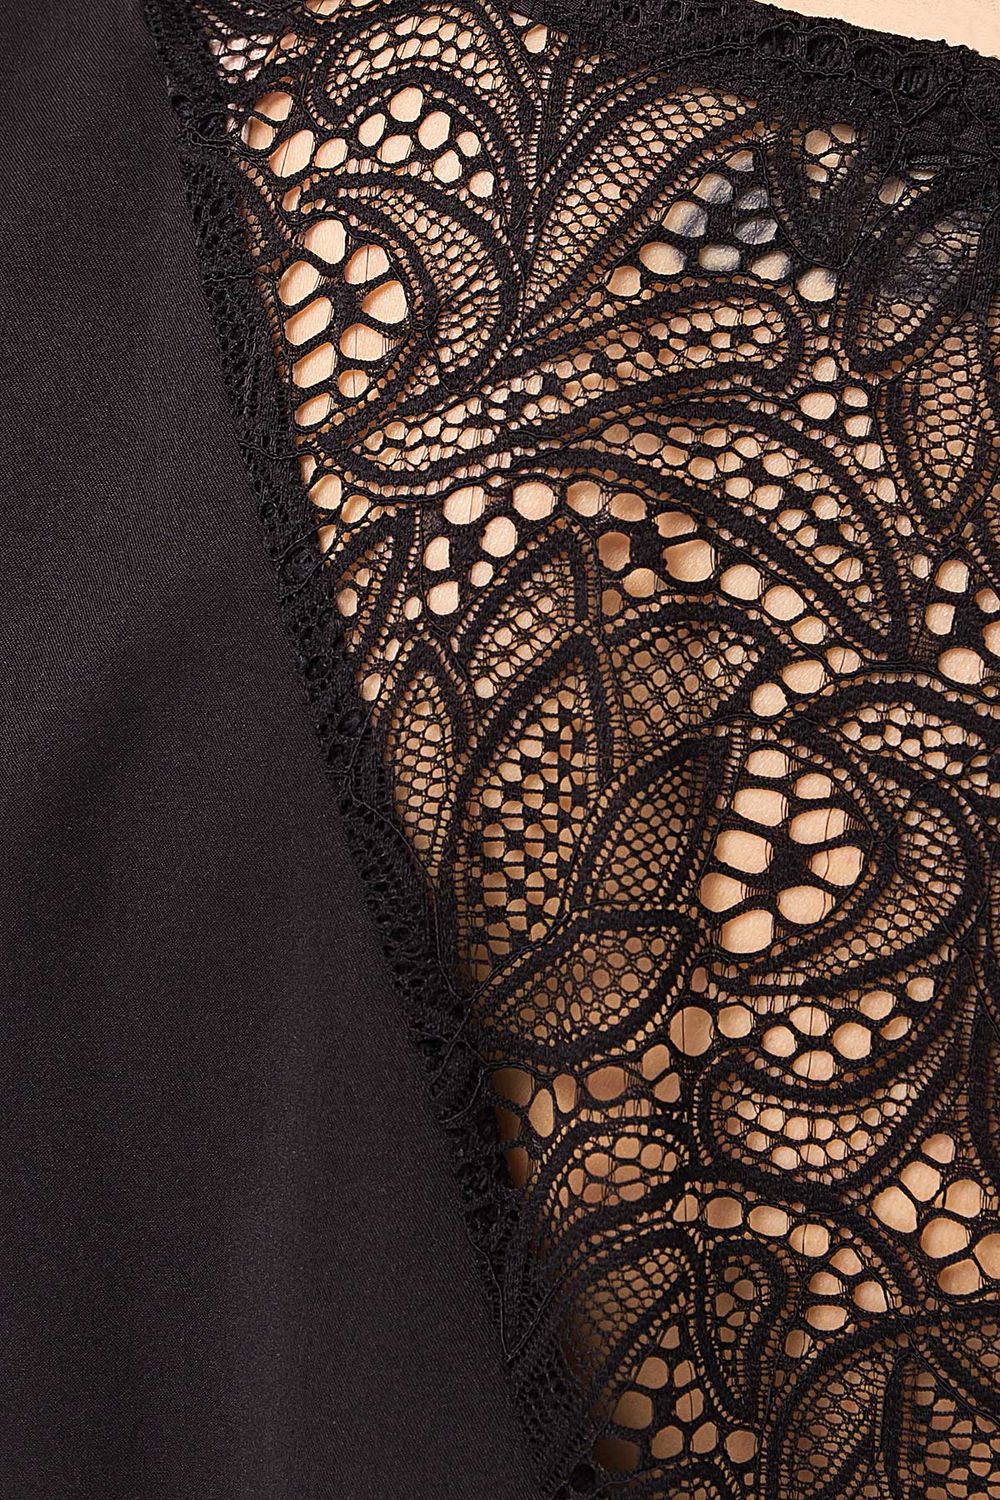 Чорне літнє плаття з гіпюром - фото